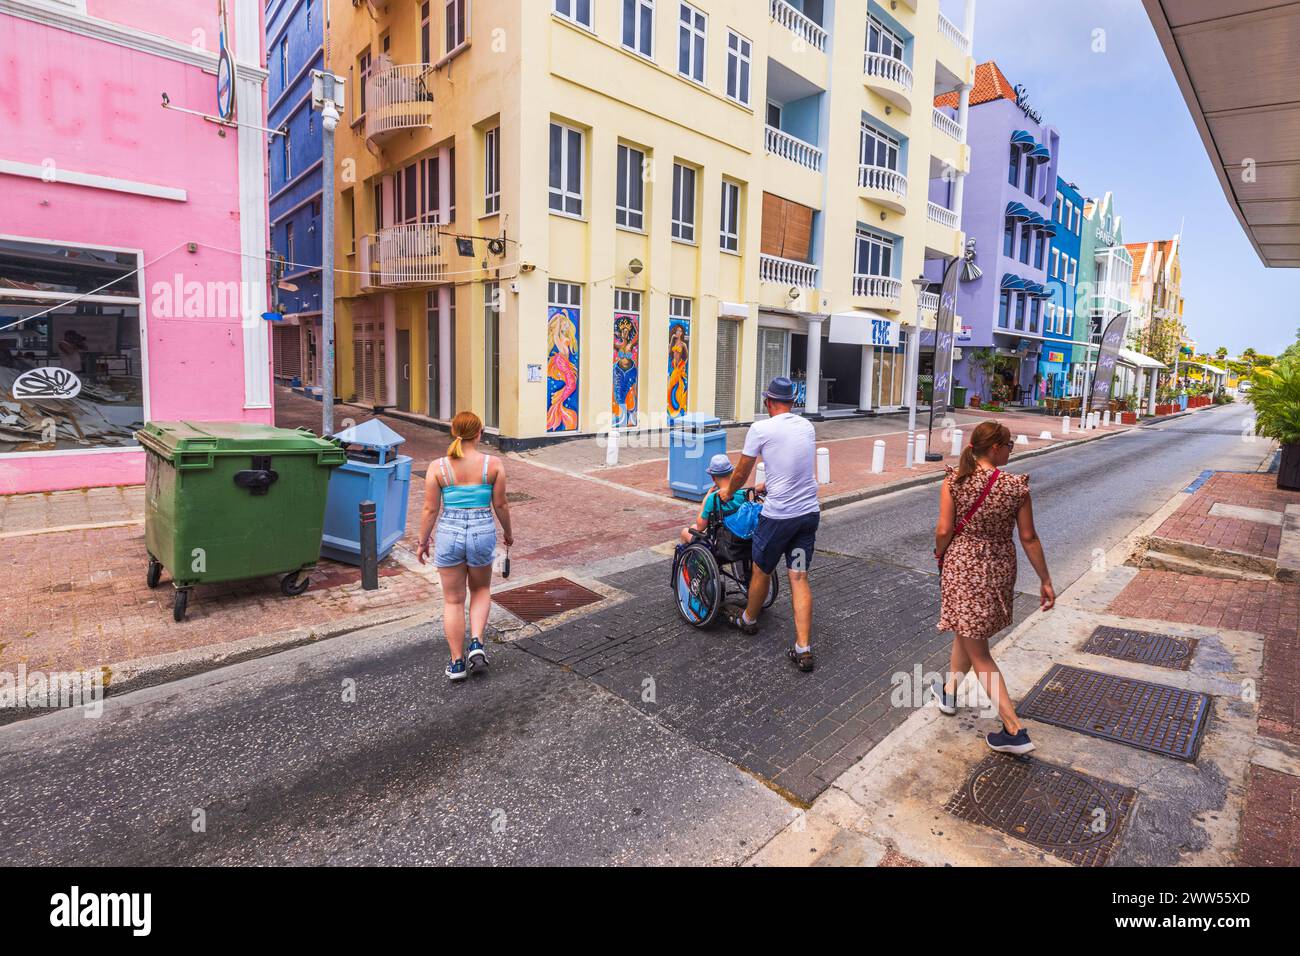 Vue de gens traversant une rue pittoresque à Curaçao, y compris un homme poussant un fauteuil roulant. Willemstad. Curaçao. Banque D'Images